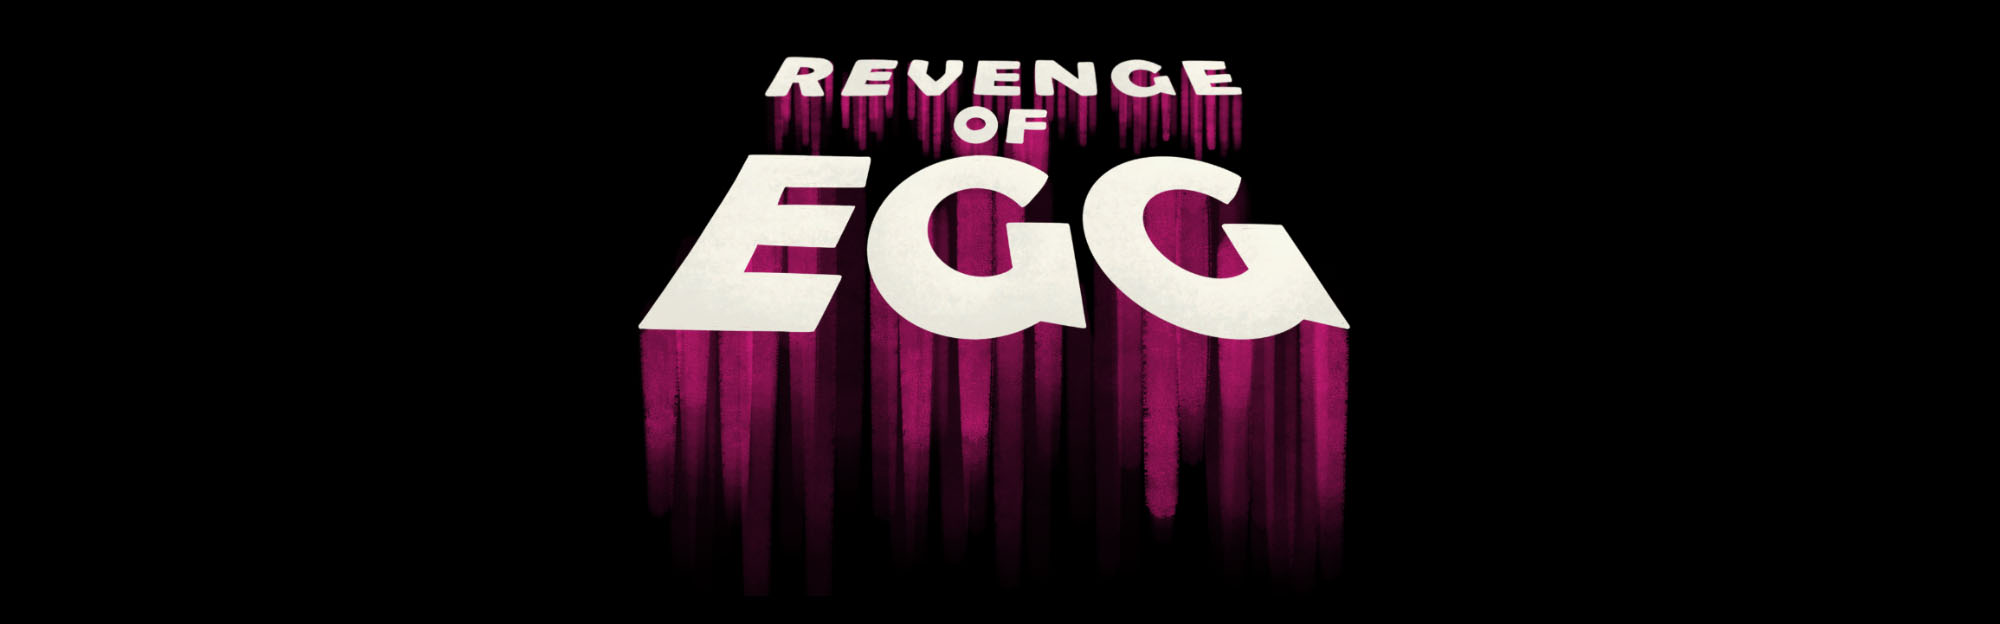 Revenge of Egg